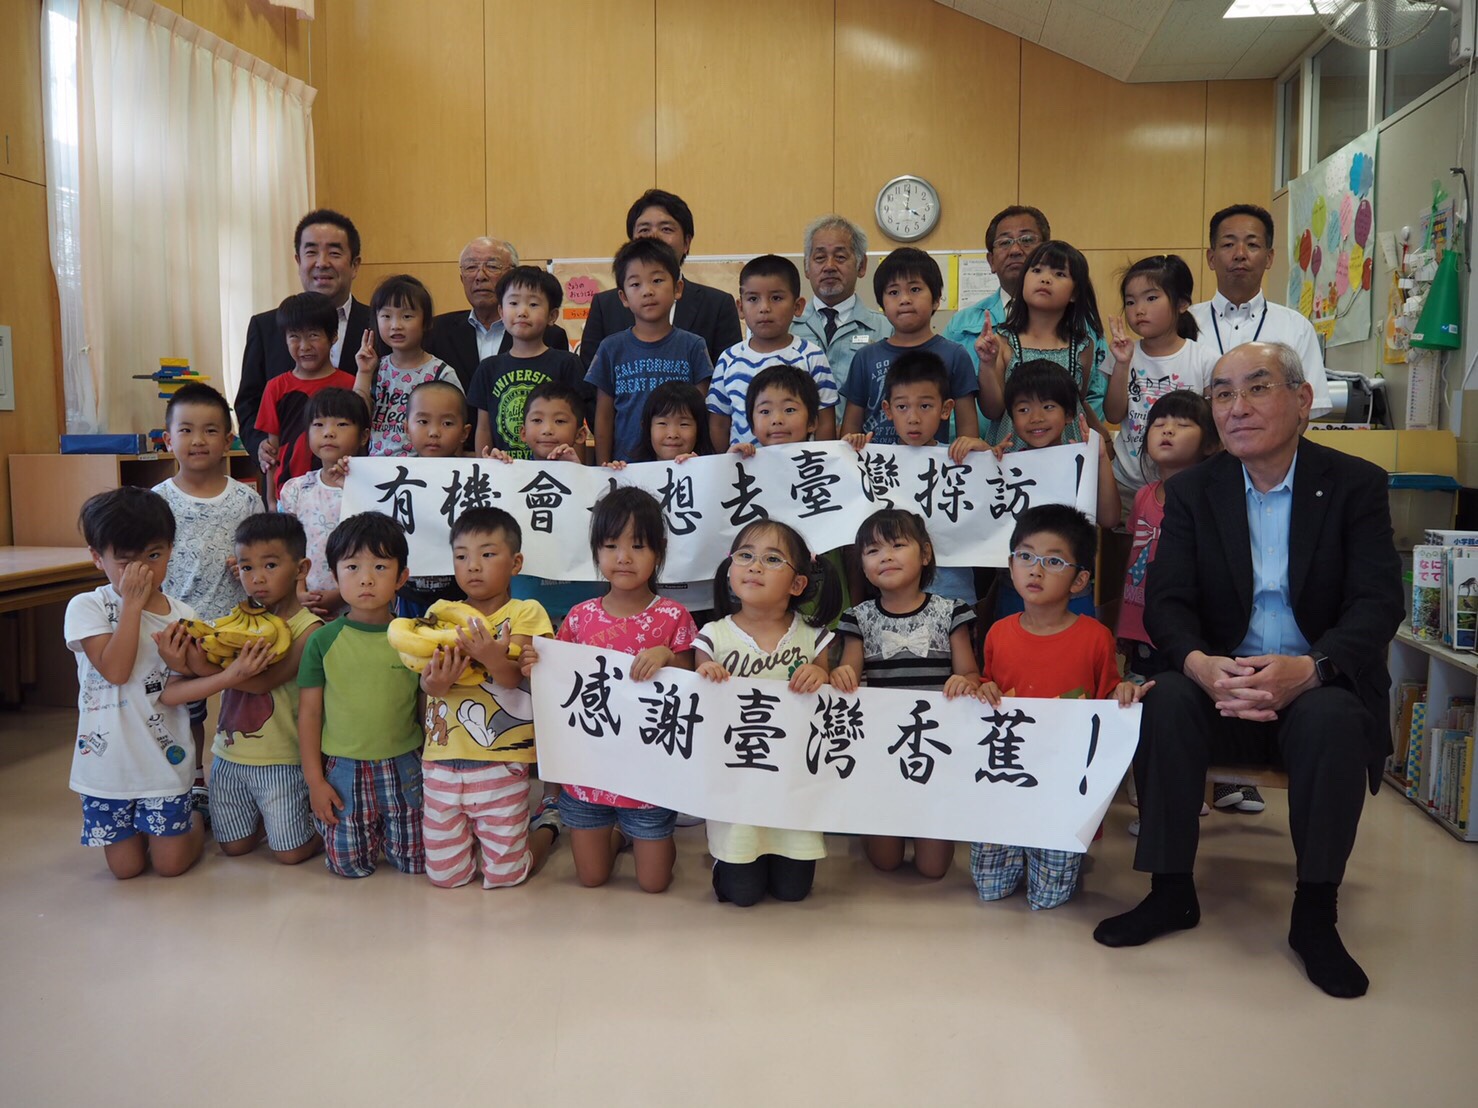 日本靜岡縣地方企業所組成之「次世代之會」組織擴大採購臺灣香蕉捐贈供應日本學童午餐